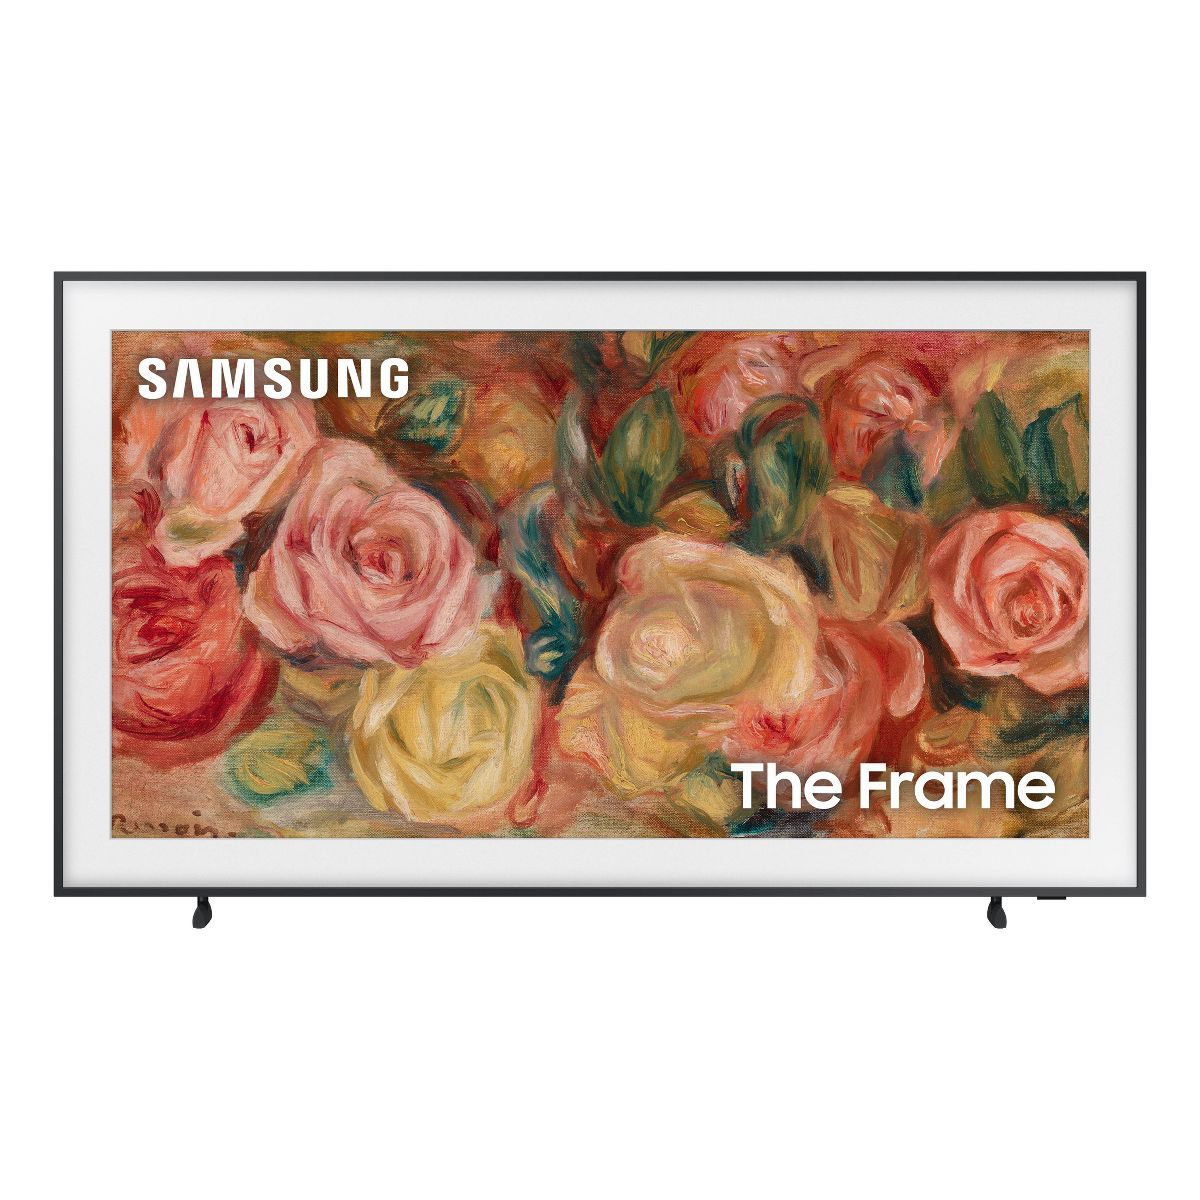 Samsung 55" The Frame QLED HDR UHD 4K Smart TV - Black (QN55LS03D) | Target